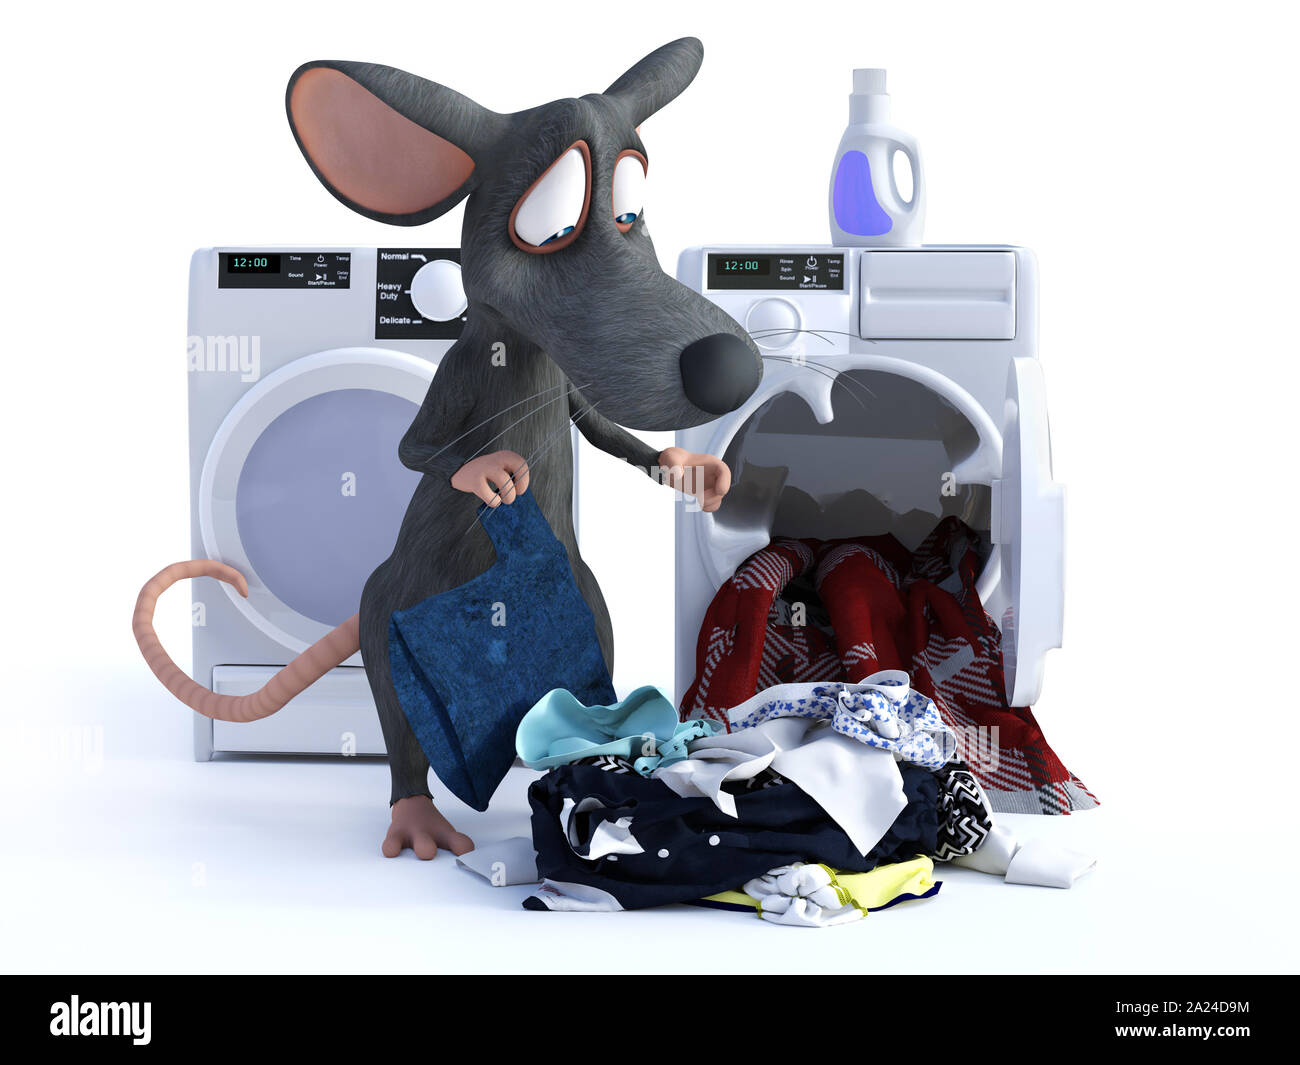 Le rendu 3D d'un sourire mignon cartoon souris mettre les vêtements dans une machine à laver, faire sa lessive. Arrière-plan blanc. Banque D'Images